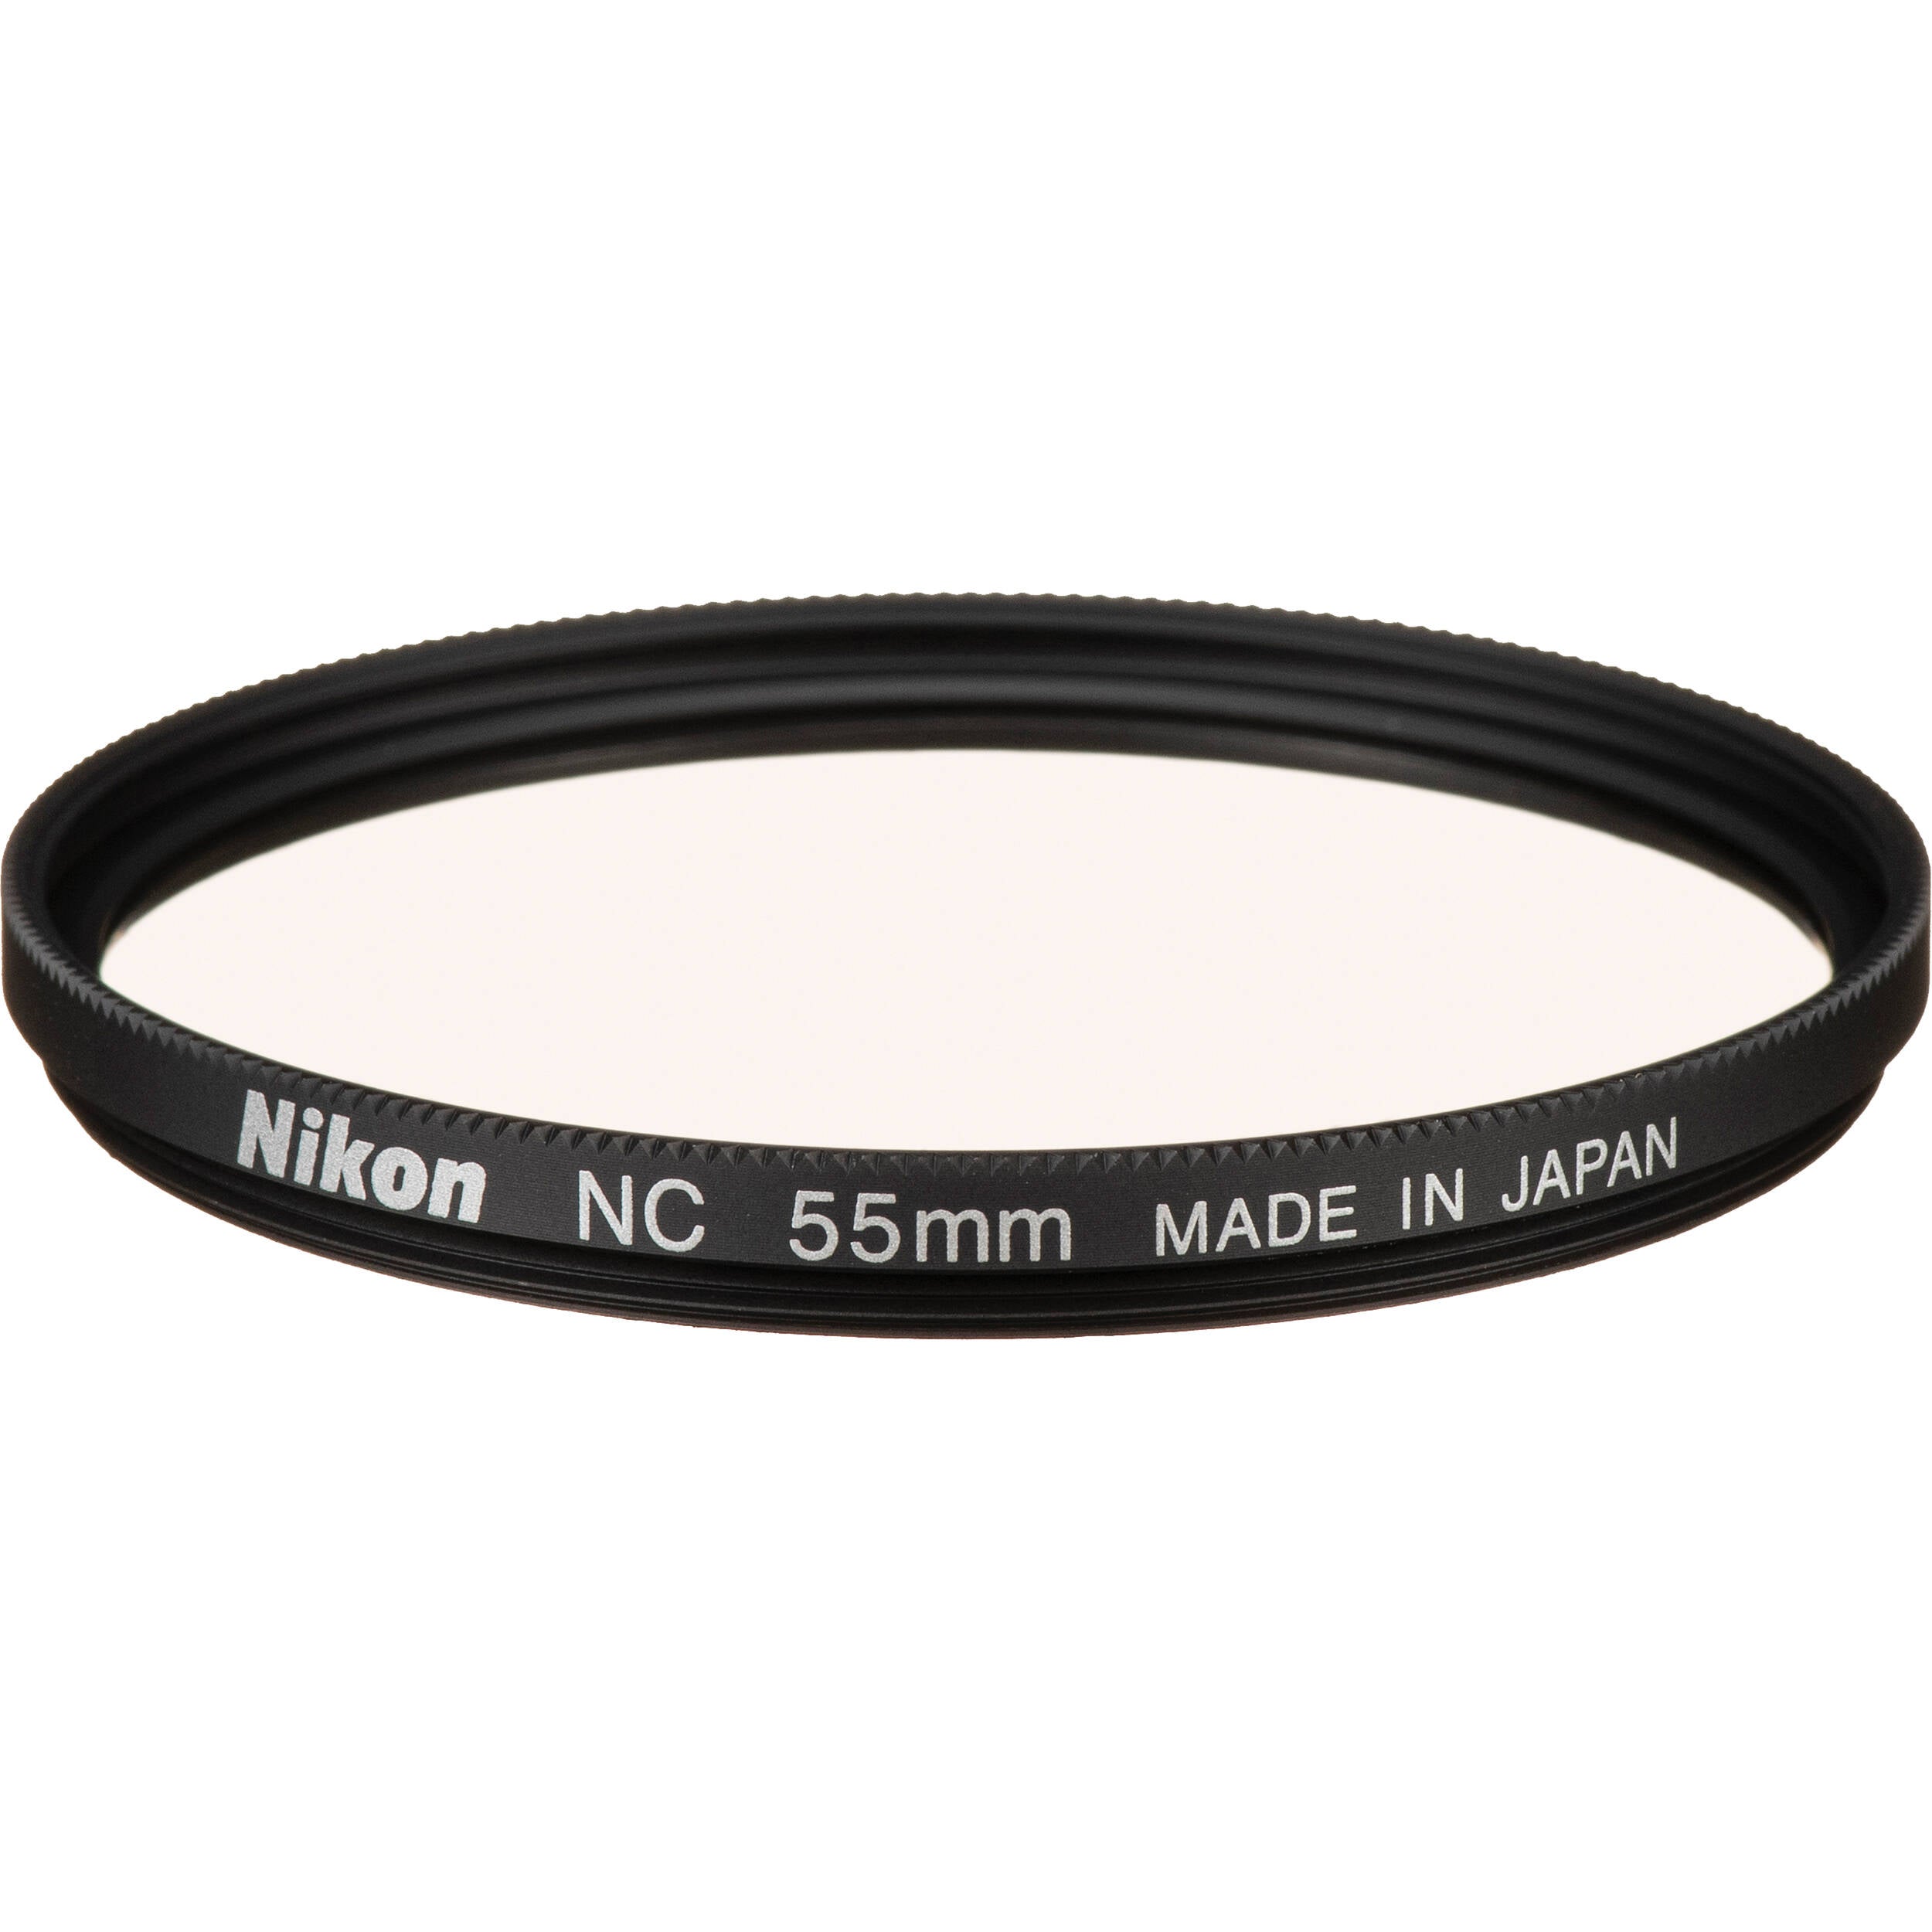 Nikon NC filter - 55mm